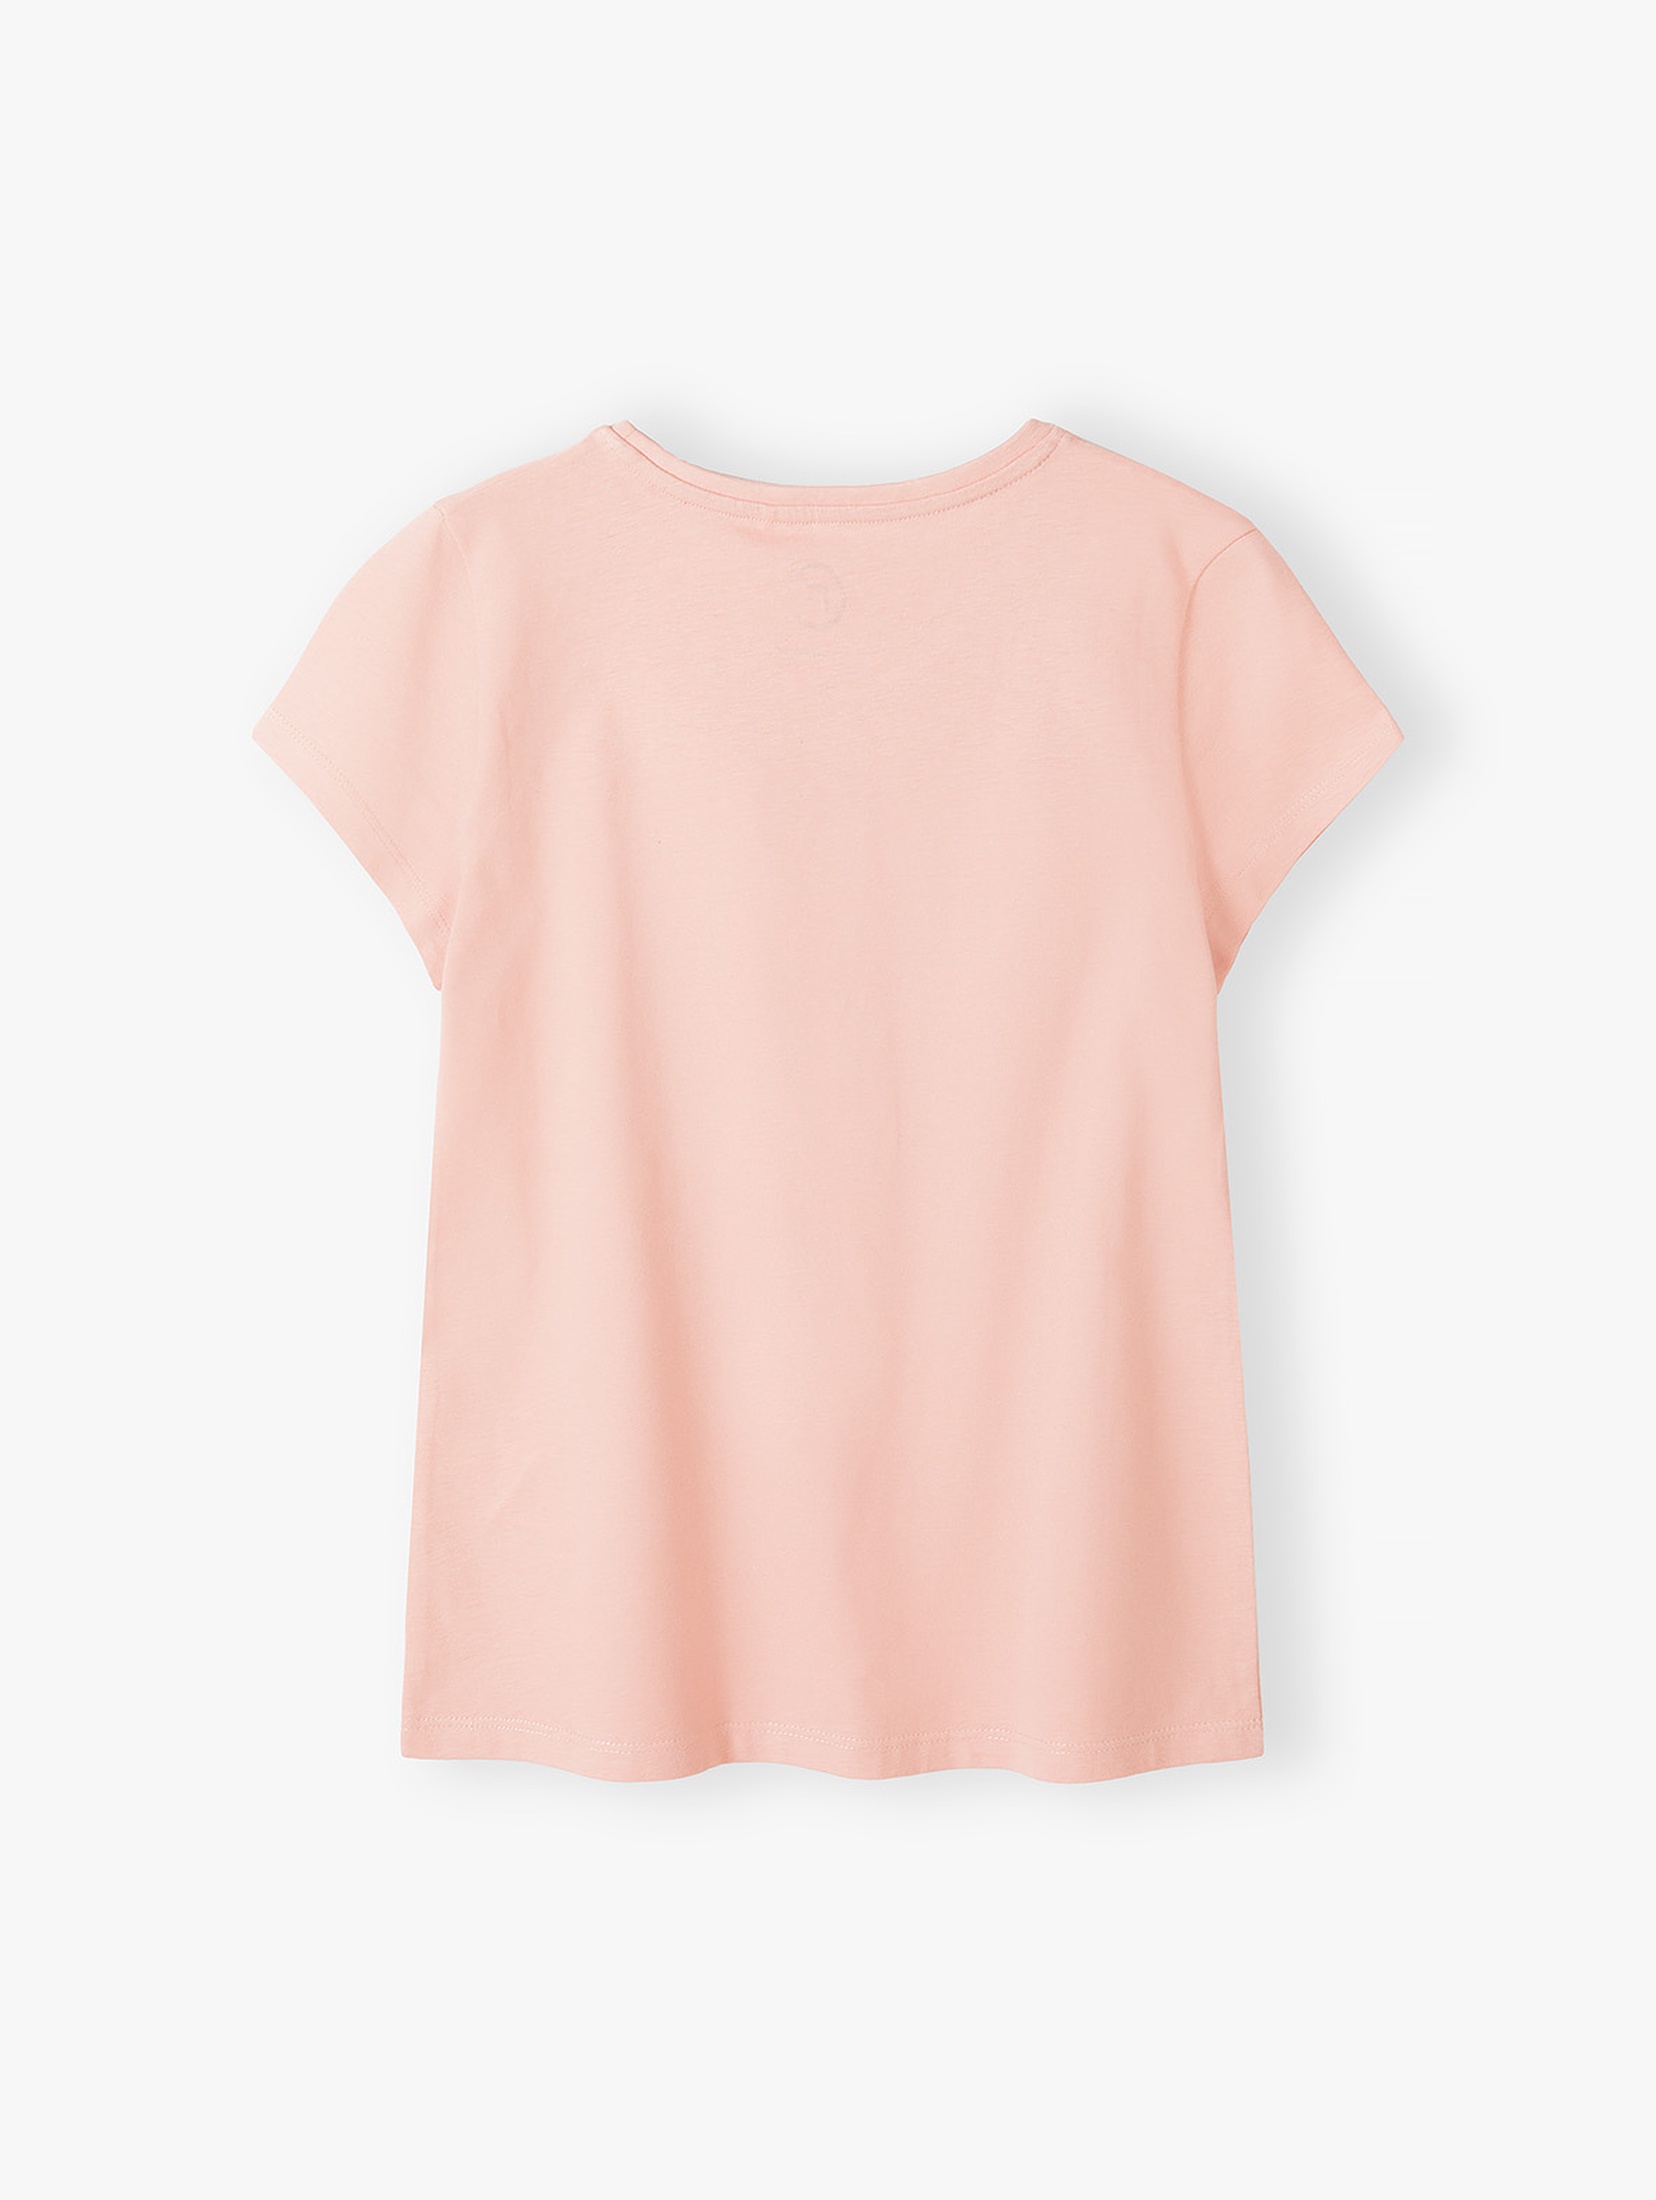 Bawełniany t -shirt damski z napisem "Możemy Wszystko" - różowy